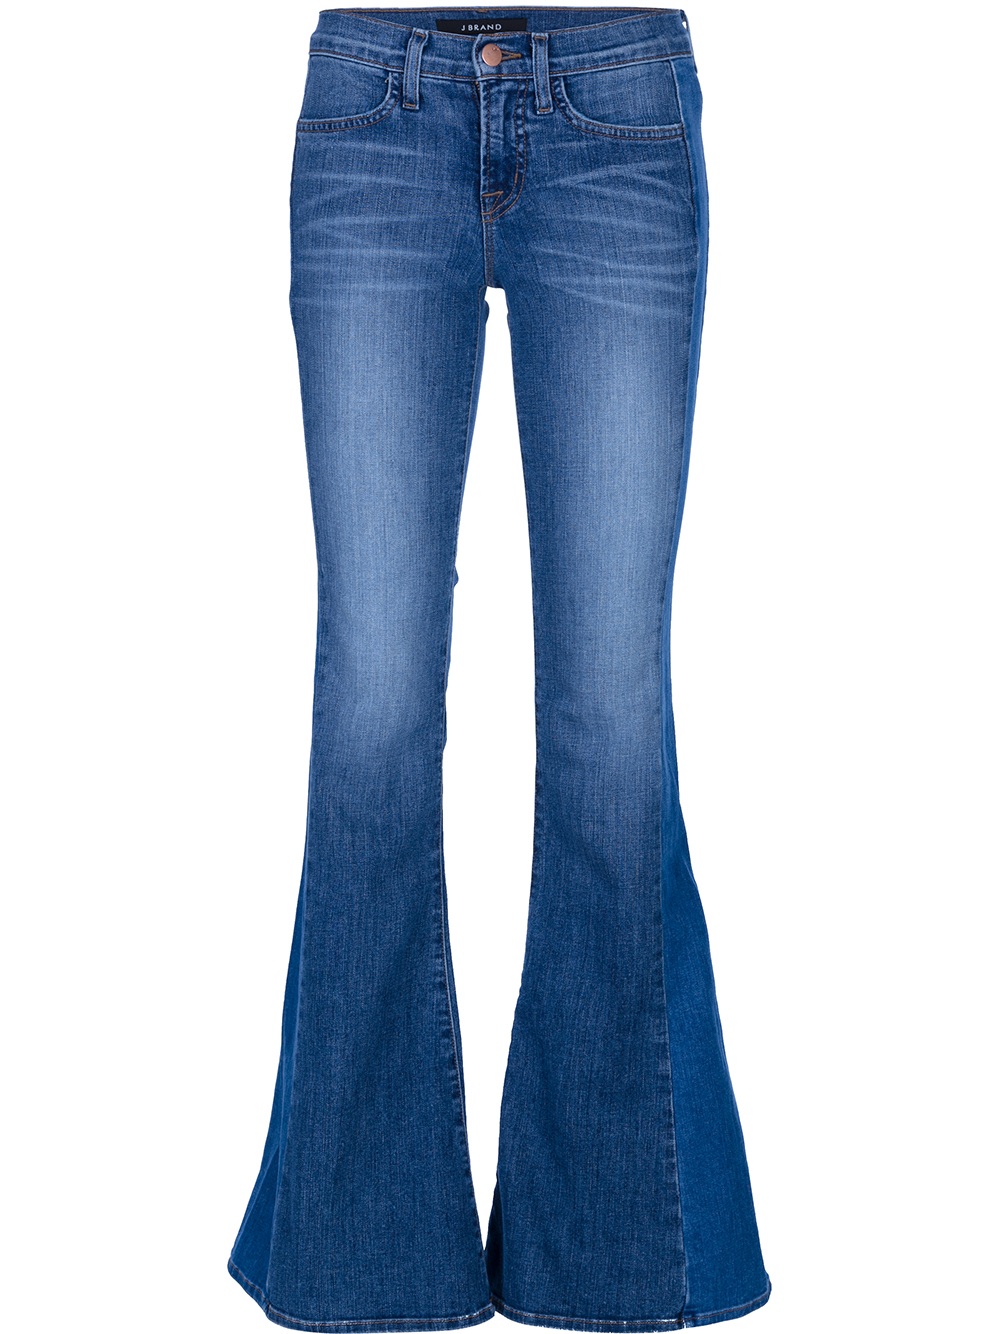 Lyst - J Brand Bell Bottom Jean in Blue